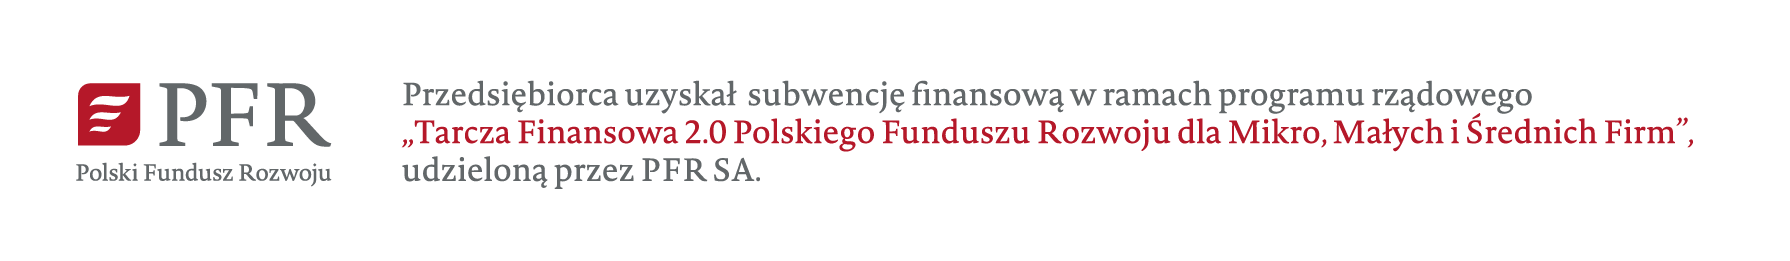 Tarcza Finansowa 2.0 Polskiego Funduszu Rozwoju dla mikro, małych i średnich firm